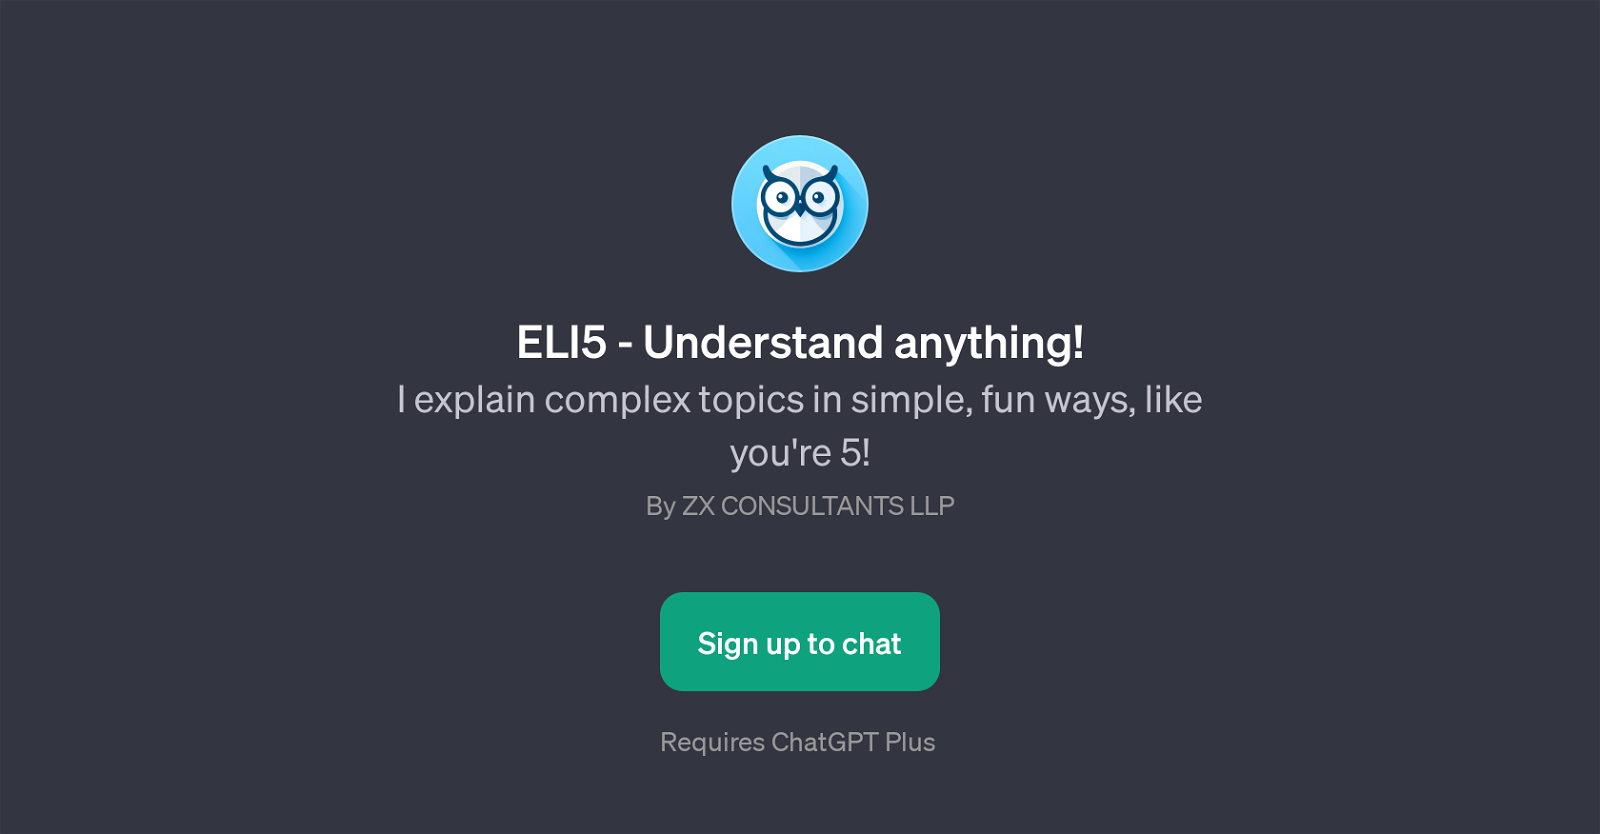 ELI5 - Understand Anything website